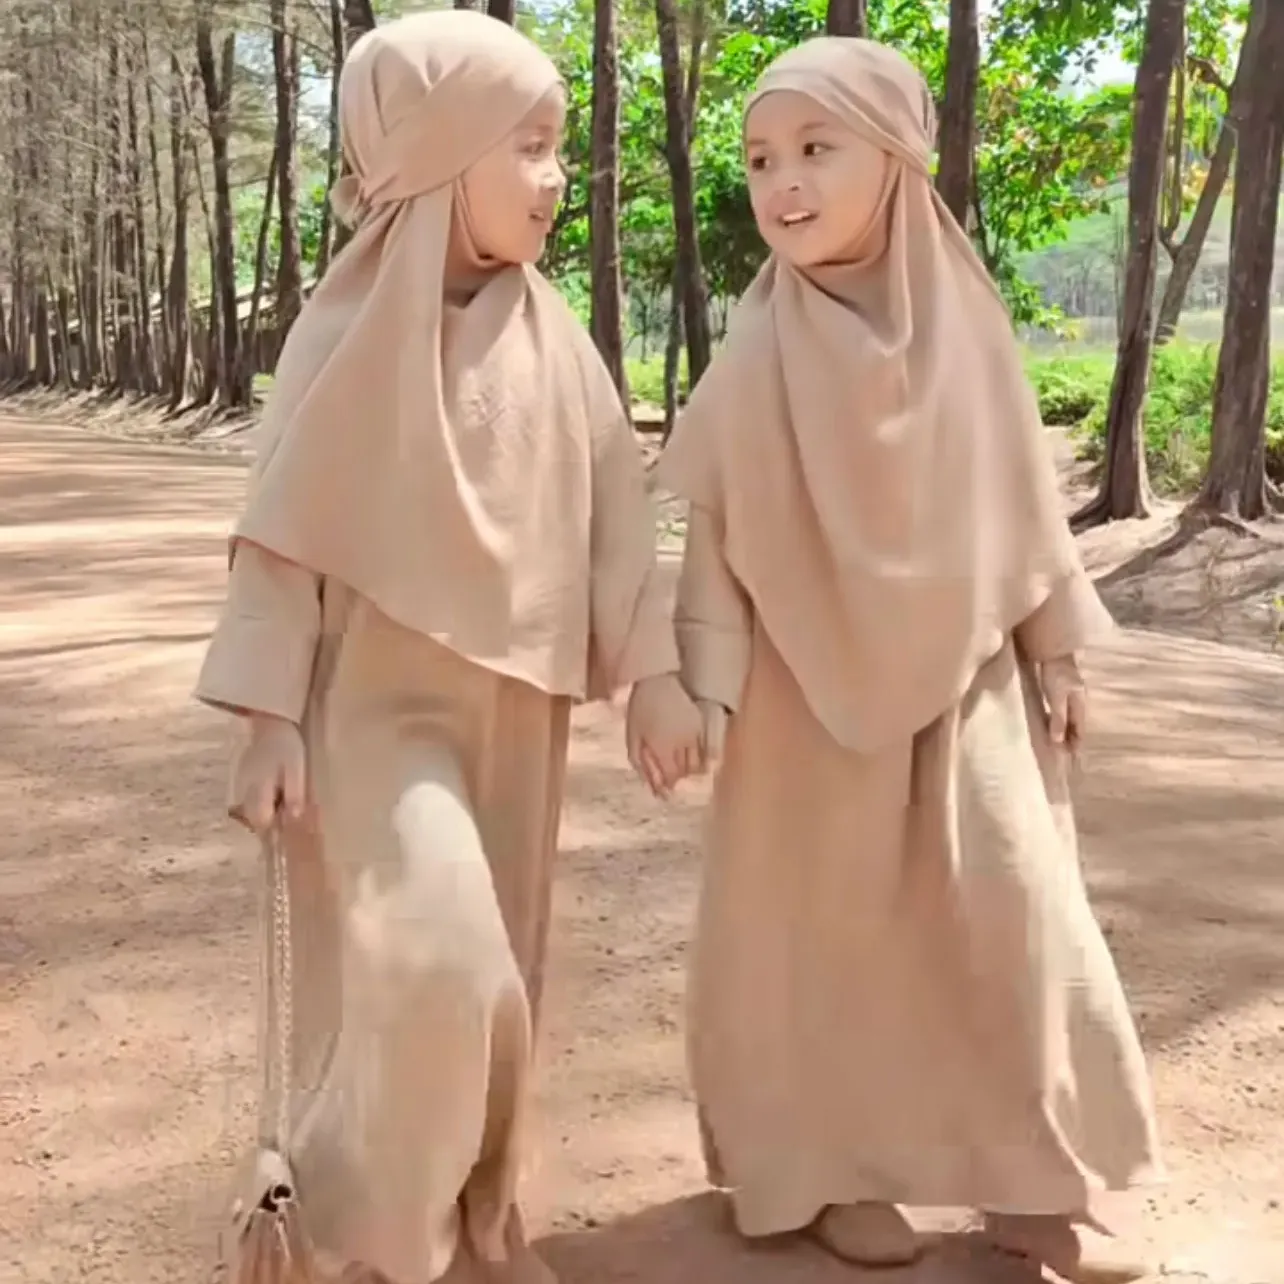 Modeatキッズラマダン中東ドバイイスラム教徒の女の子、2ピースセット無地ヒジャーブスカーフドレスセット